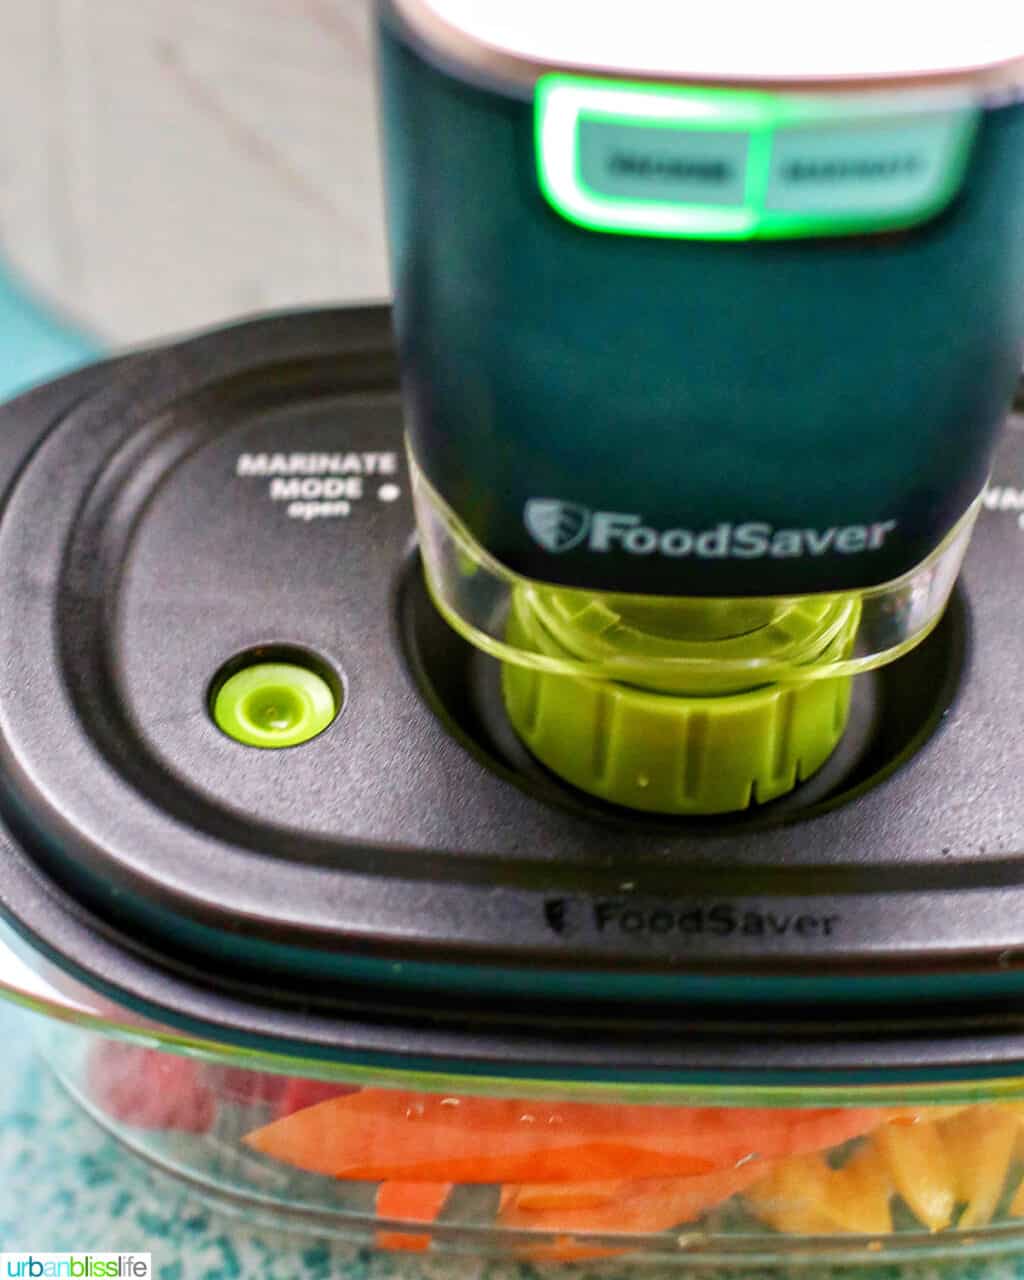 FoodSaver Handheld Vacuum Sealer sealing veggies in Preserve & Marinate Containers